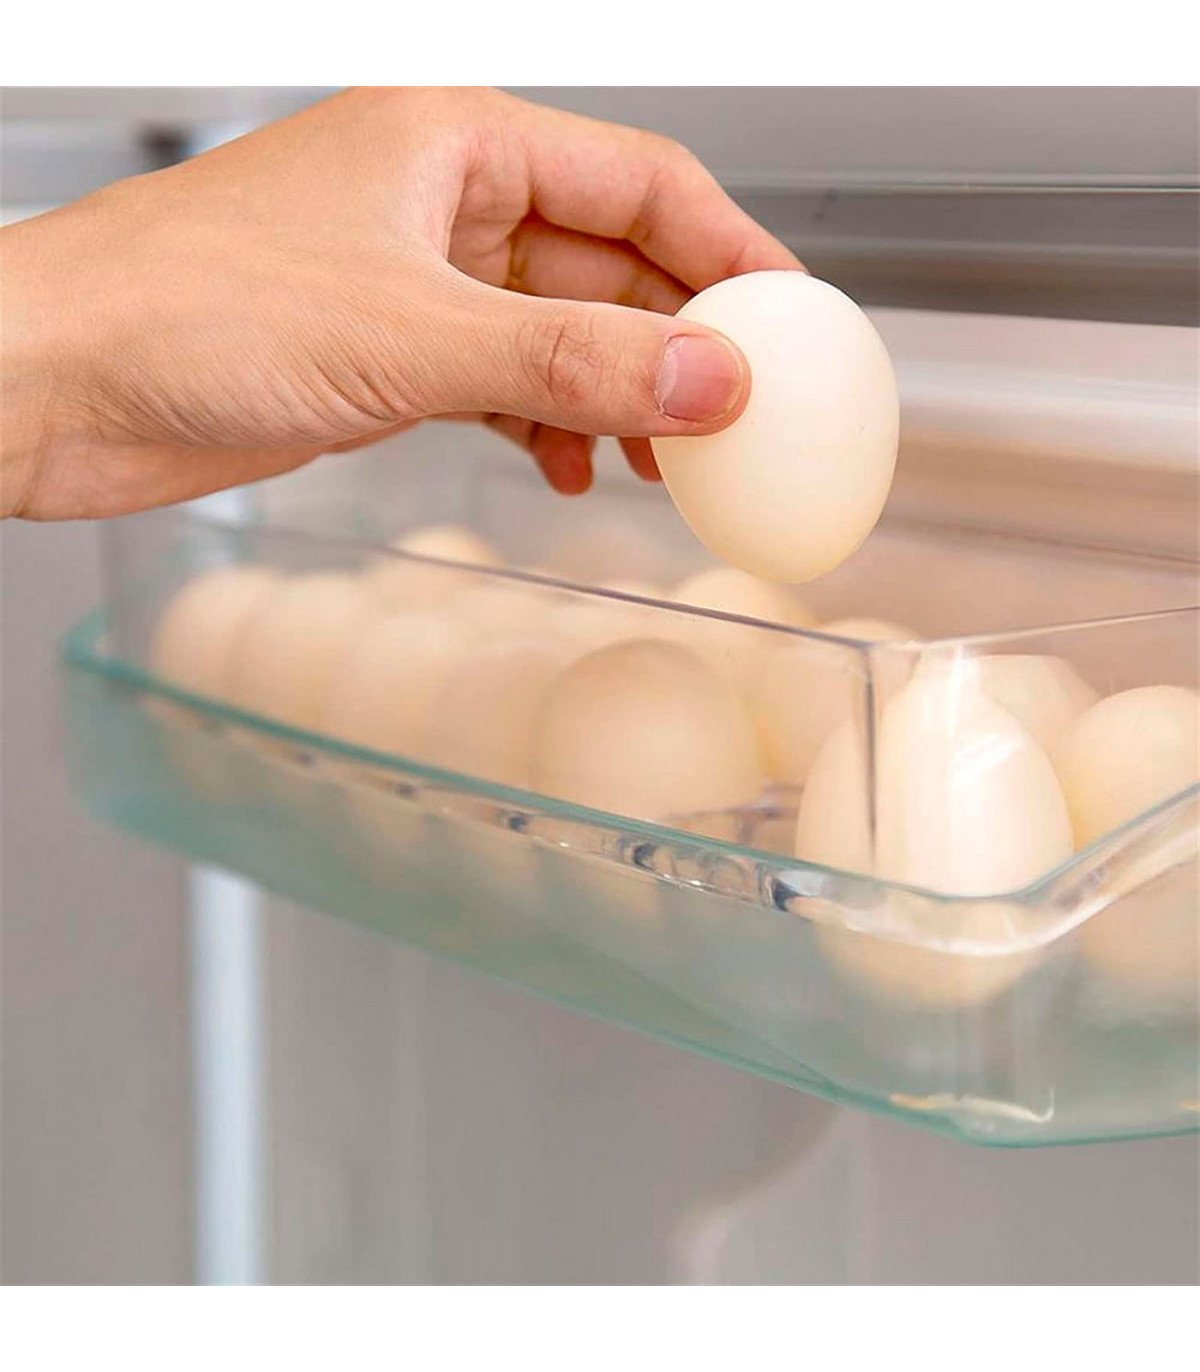 https://tradineur.com/64264-superlarge_default/tradineur--huevera-rectangular-plastico-transparente-recipiente-para-14-huevos-almacenamiento-de-cocina-115-x-37-x-8-cm.jpg